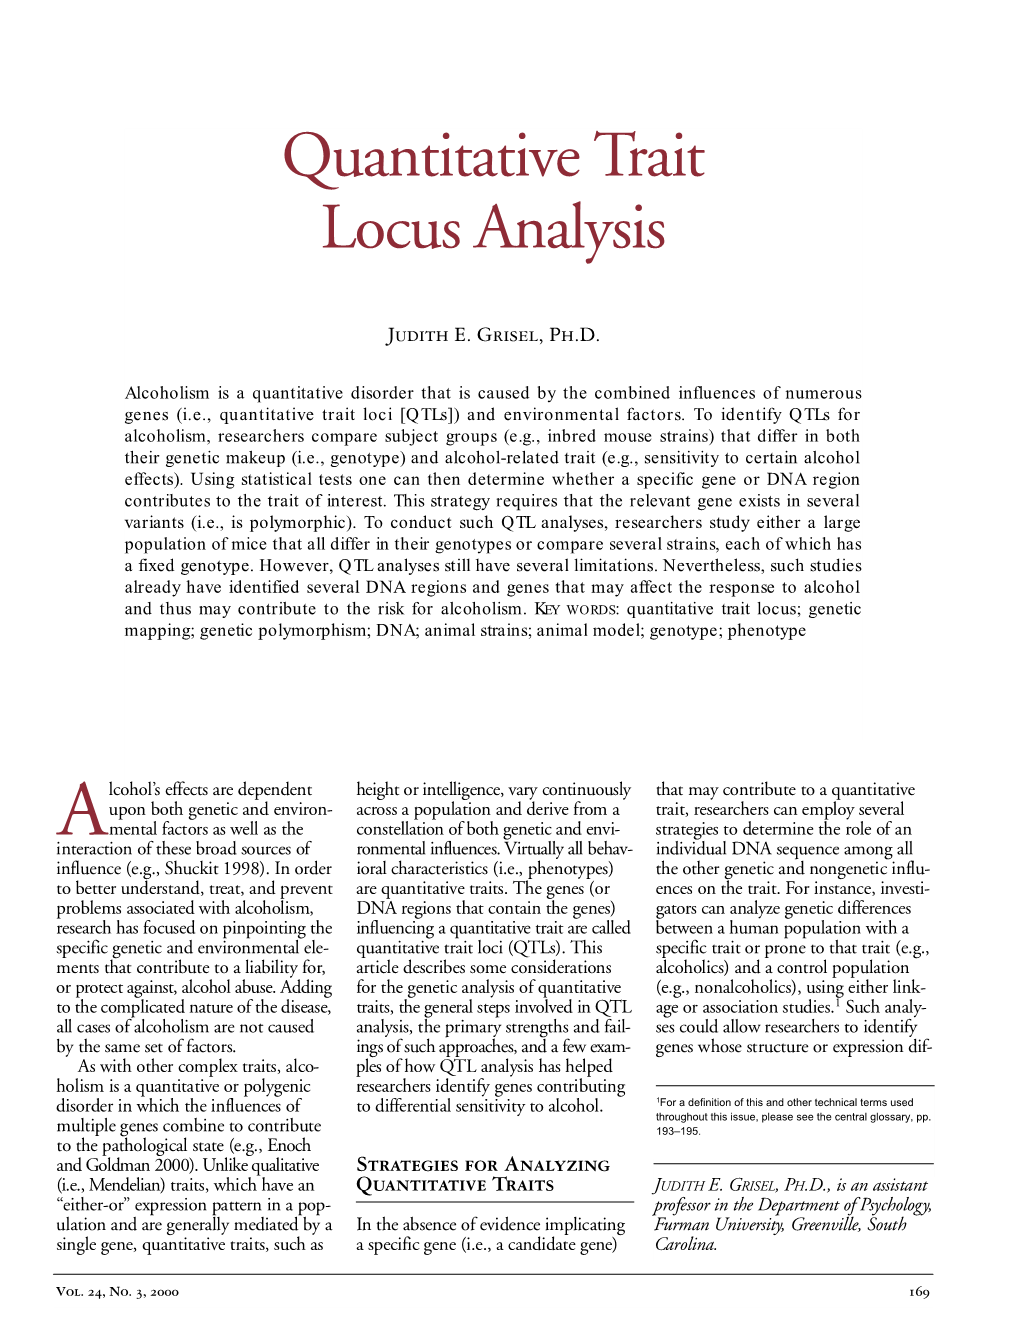 Quantitative Trait Locus Analysis